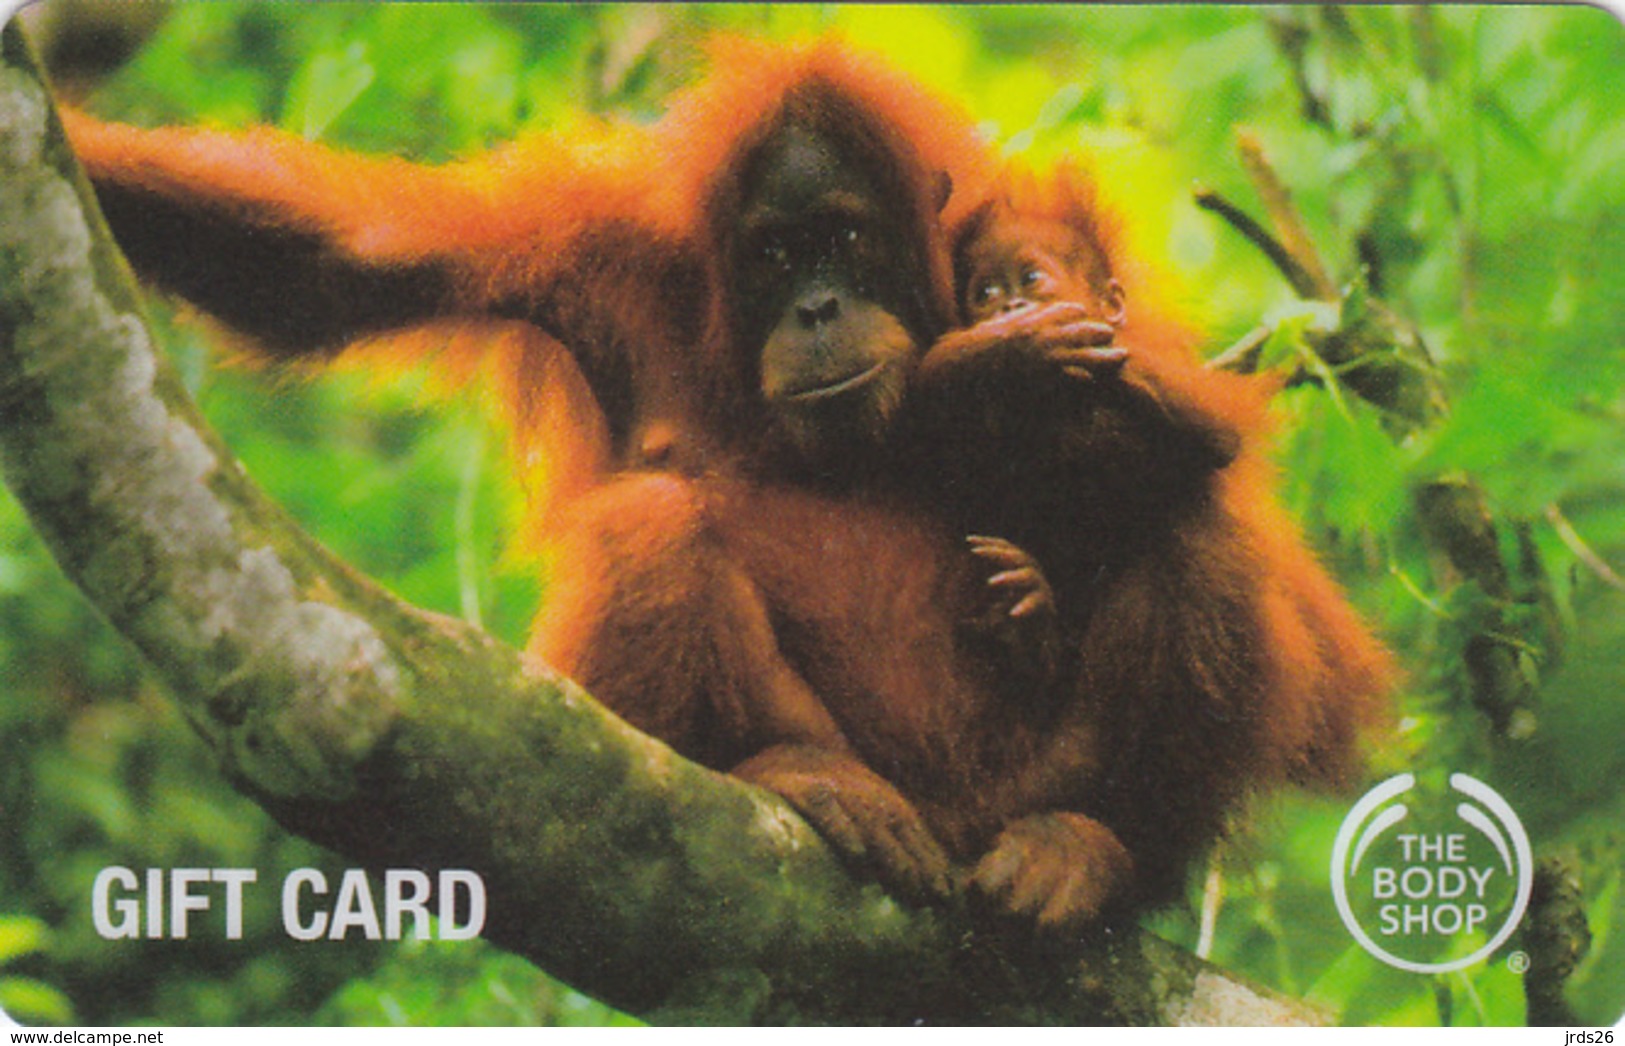 Gift Card - - - UK - - - Monkey - Gift Cards